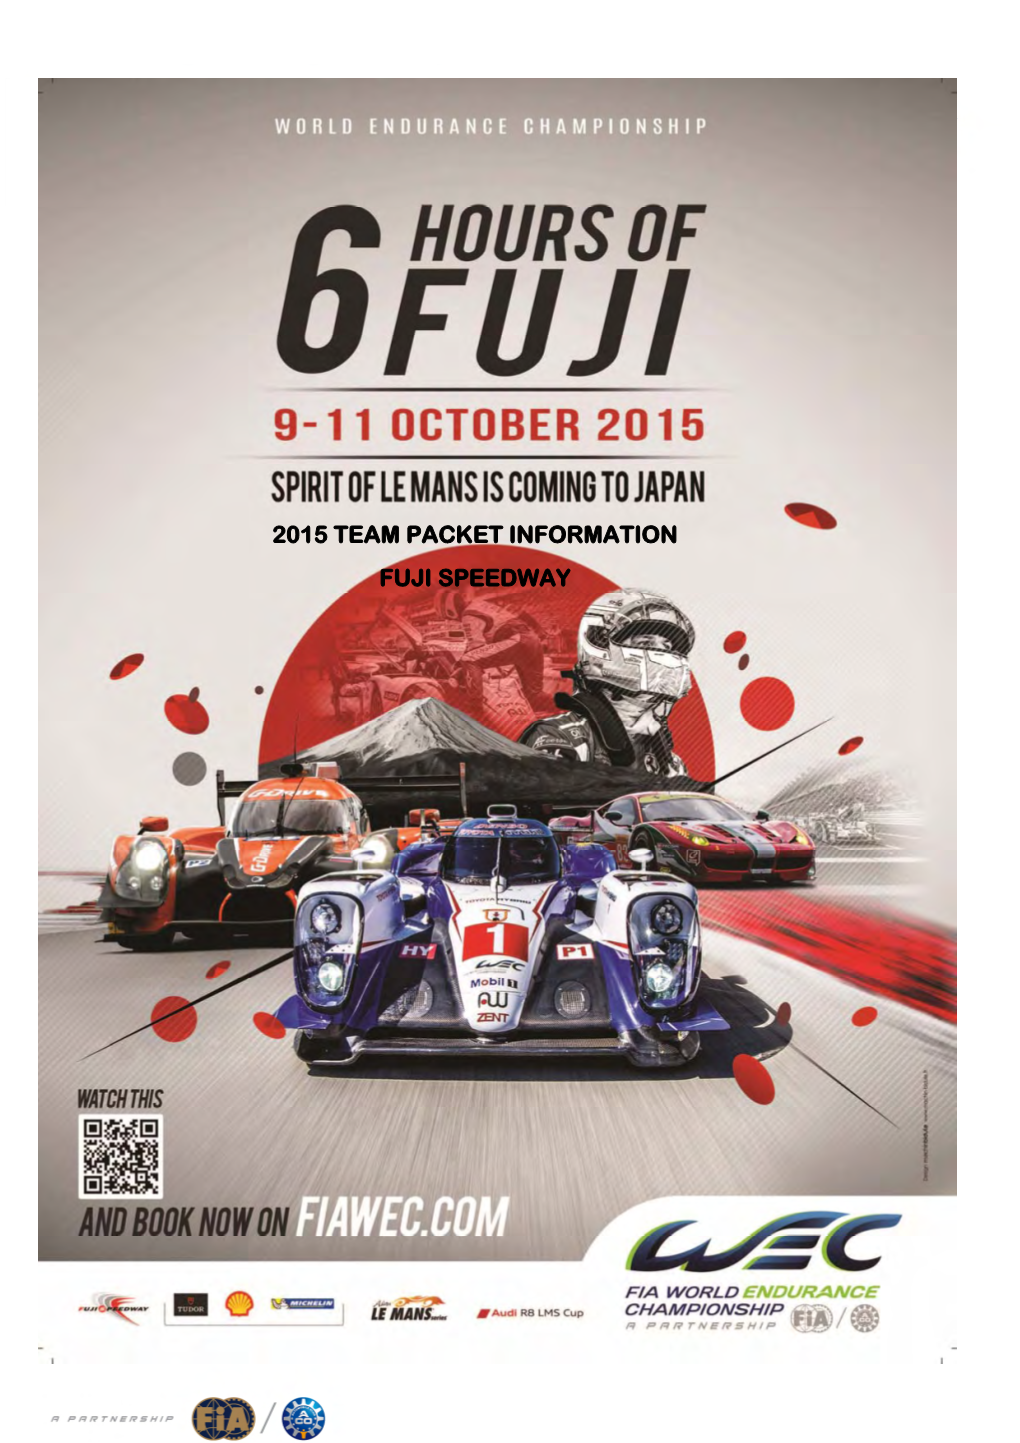 2015 Team Packet Information Fuji Speedway 2015 Team Packet Information Fuji Speedway